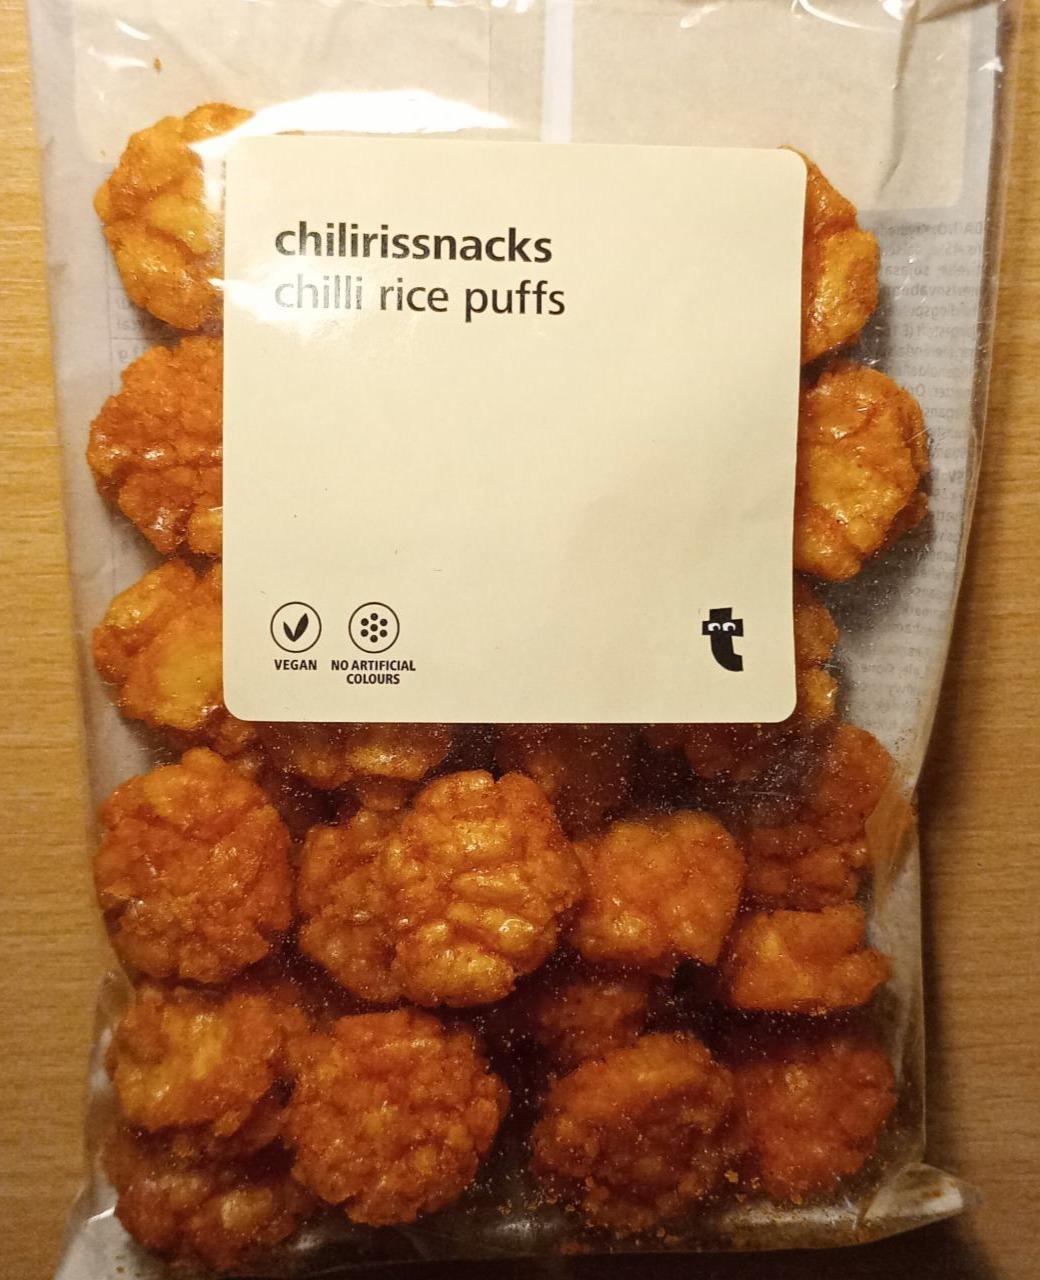 Fotografie - Chilli rice puffs chilirissnack